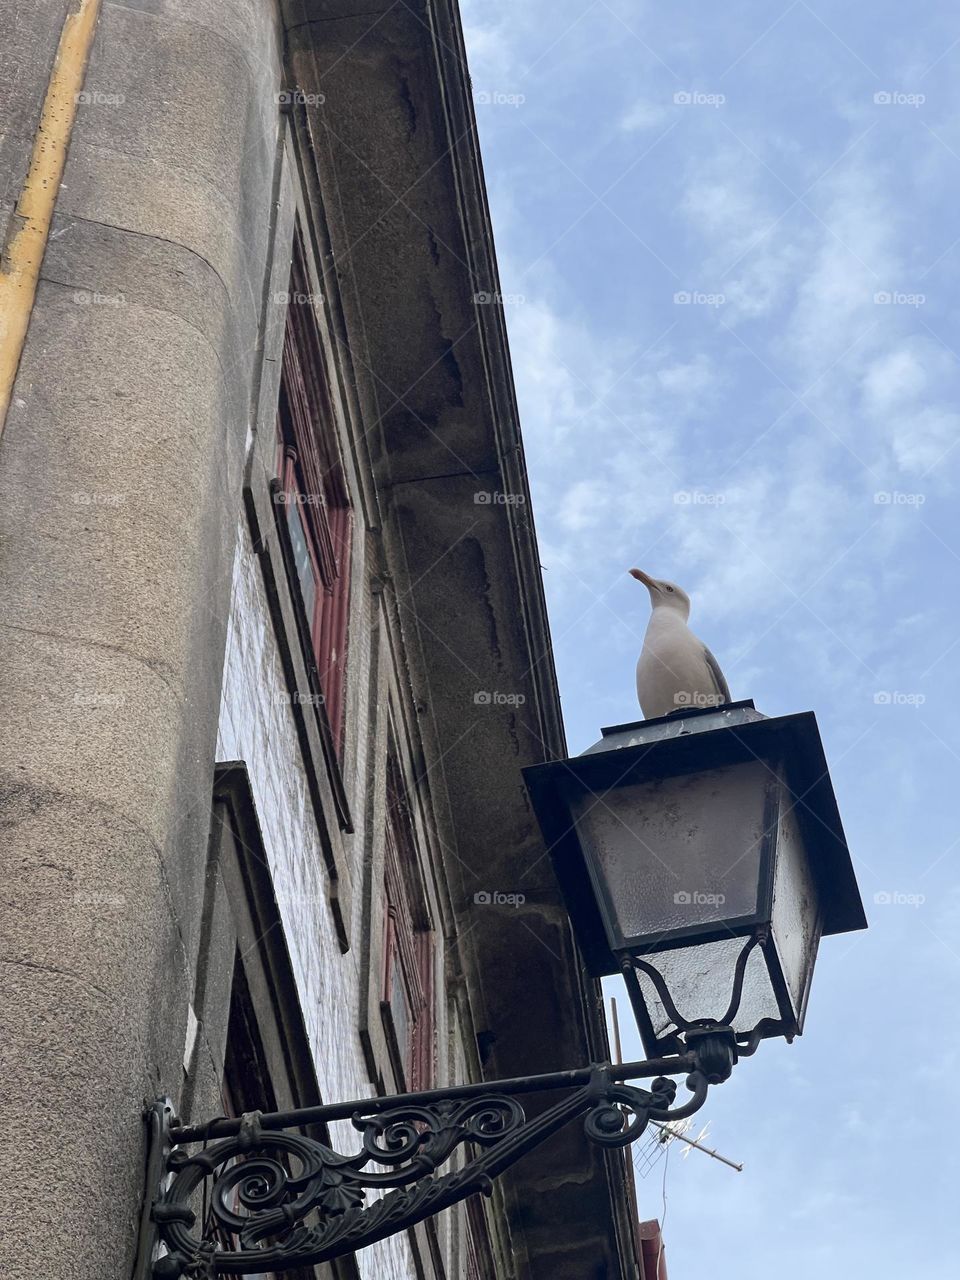 Seagull on the street light